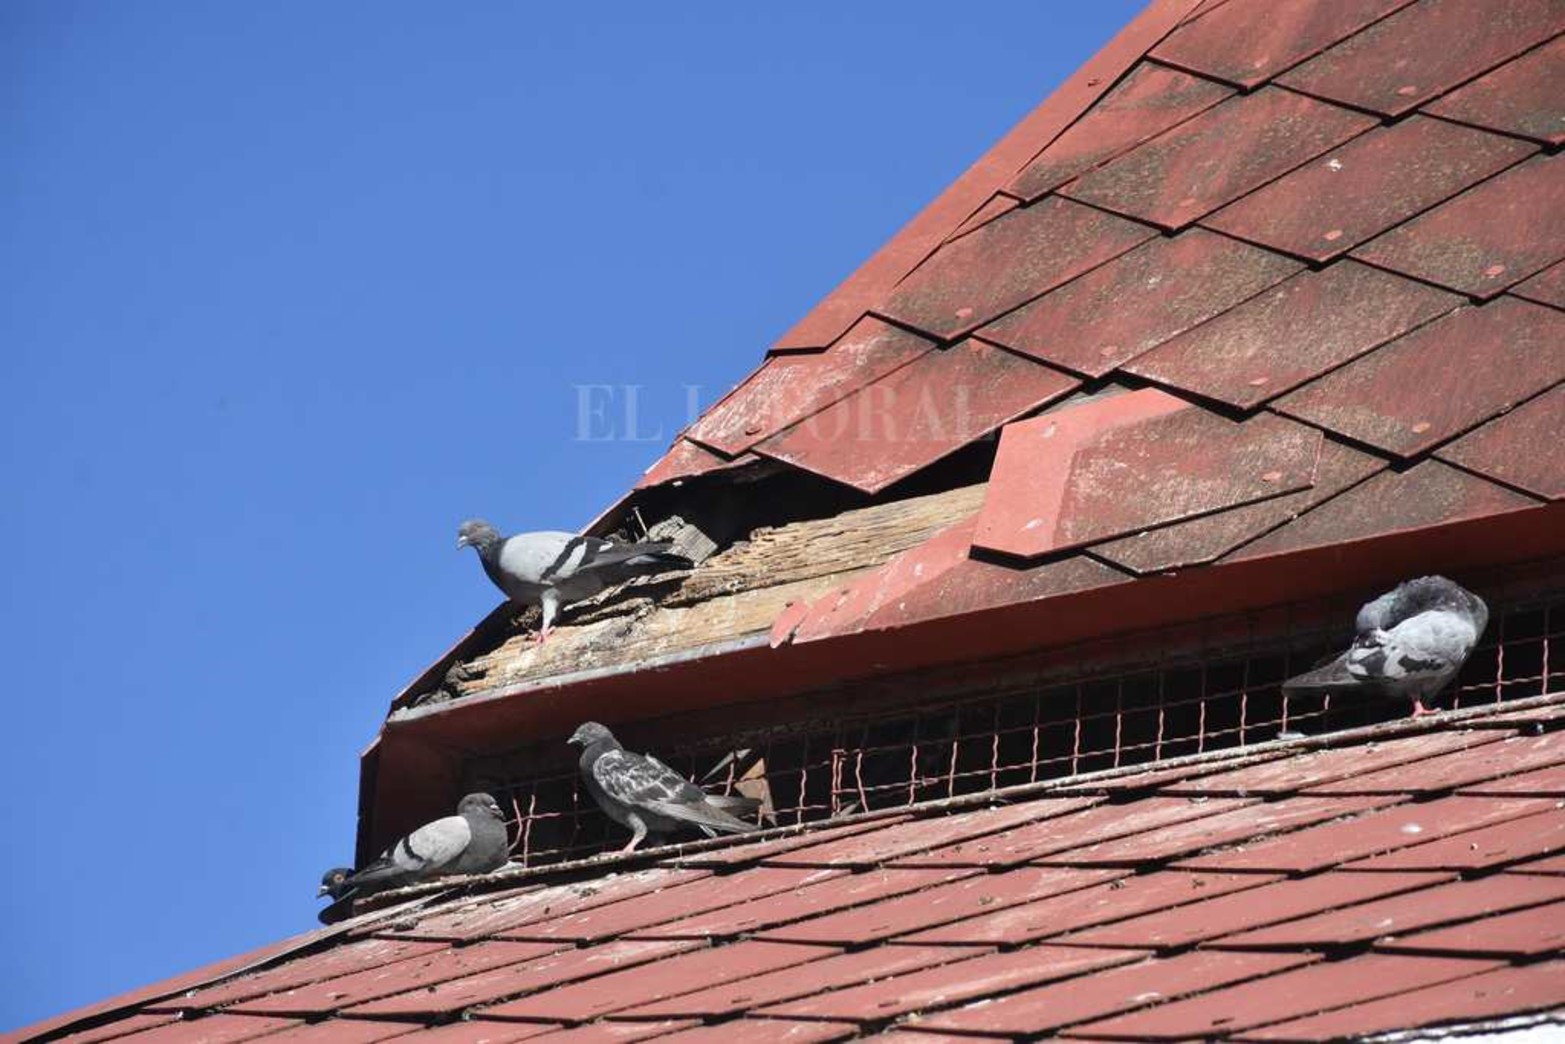 En el techo, se siguen observando agujeros por donde salen y entran palomas.